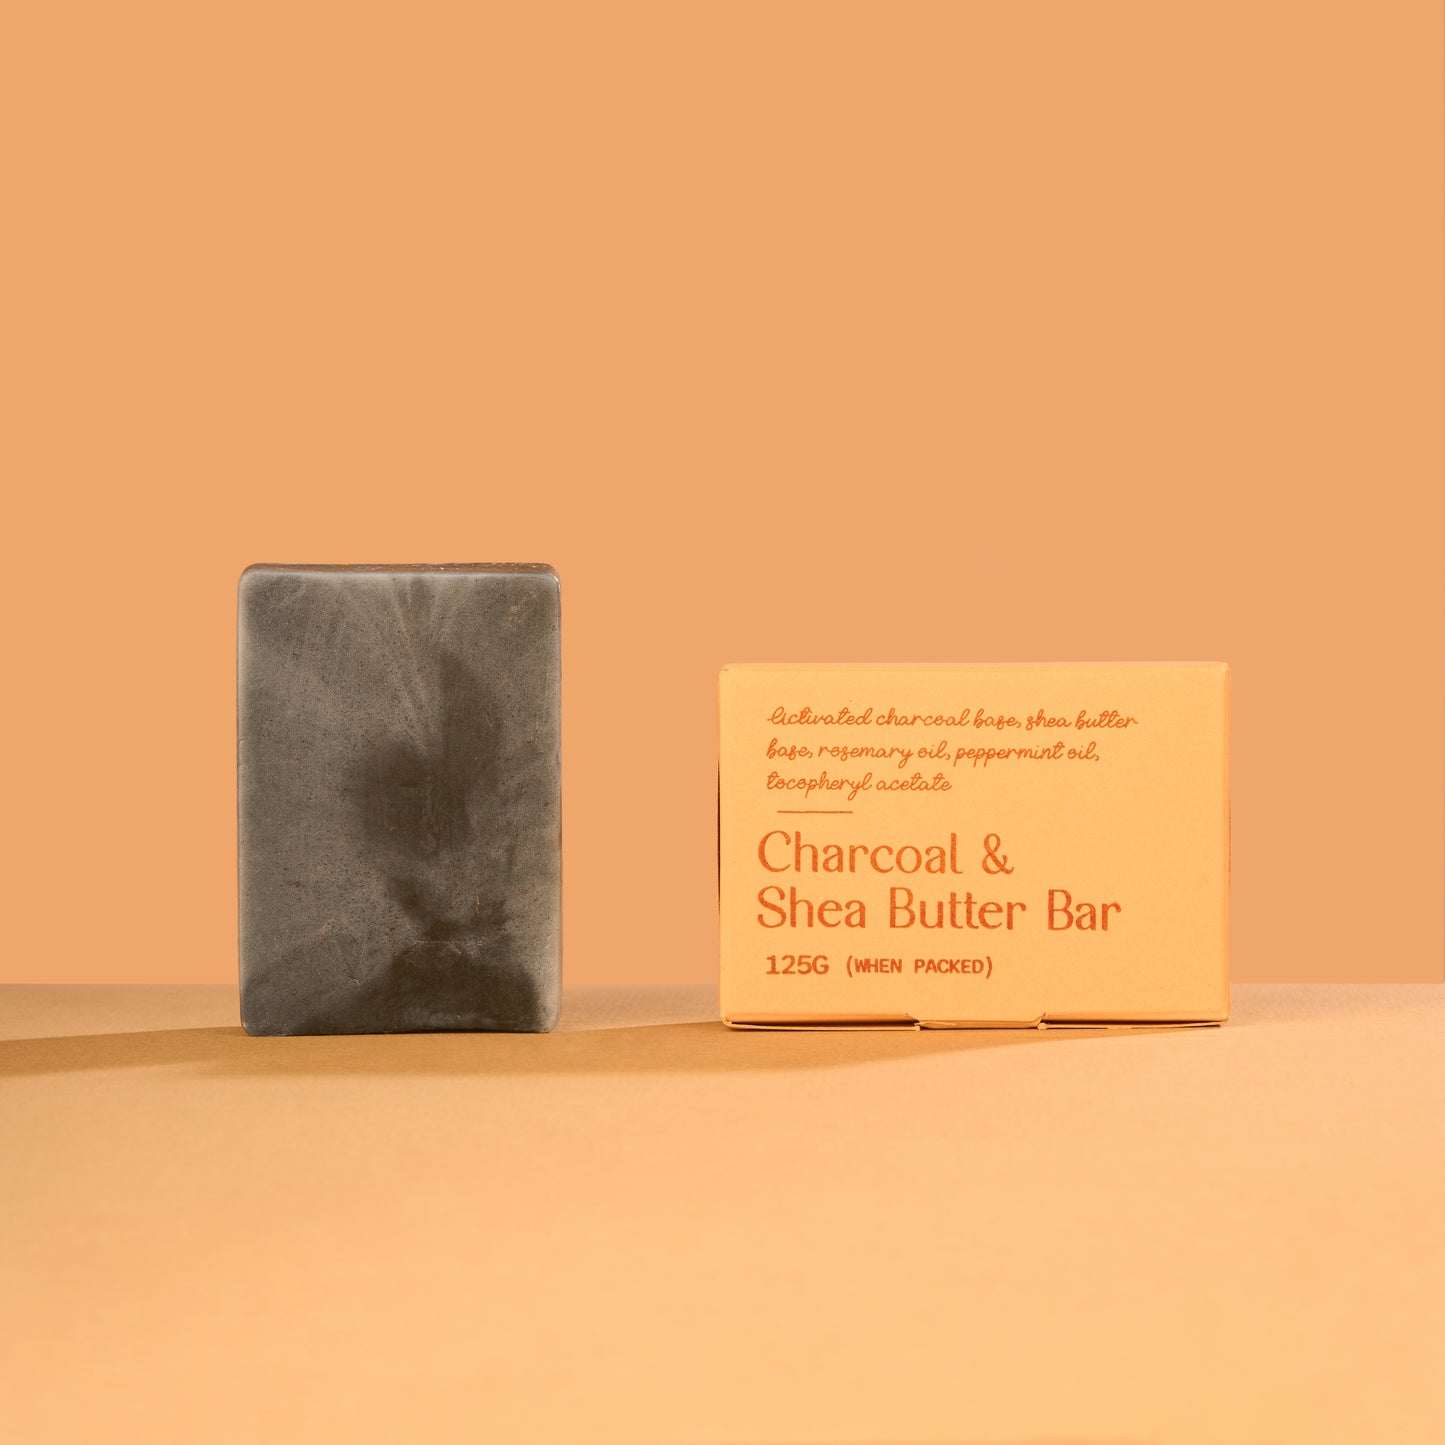 Charcoal & Shea Butter Bar